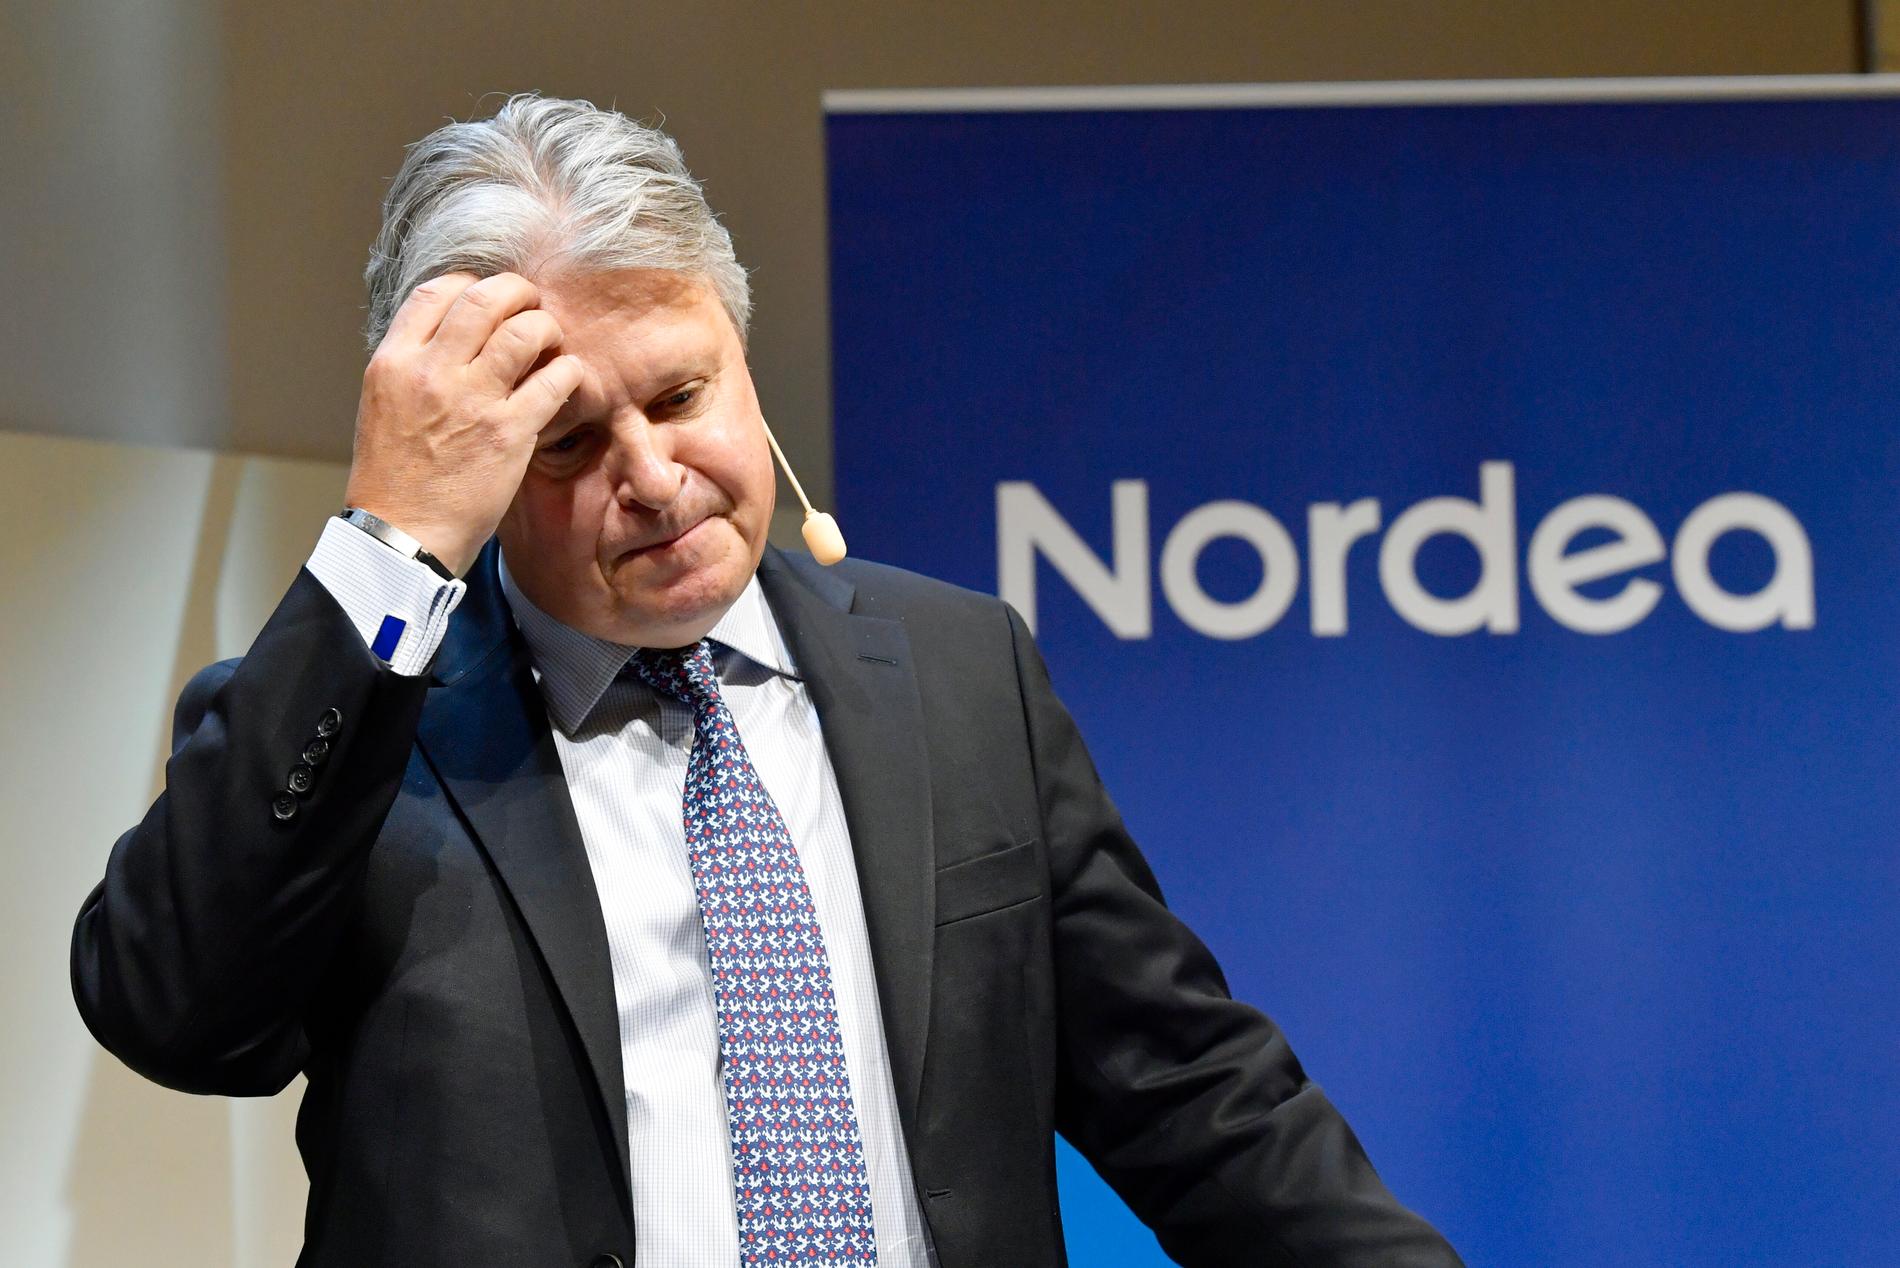 Styrelsebeslutet om att flytta Nordea, med vd Casper von Koskull, fattades i början av september. Frågan avgörs slutligt på Nordeas stämma till våren. Arkivbild.